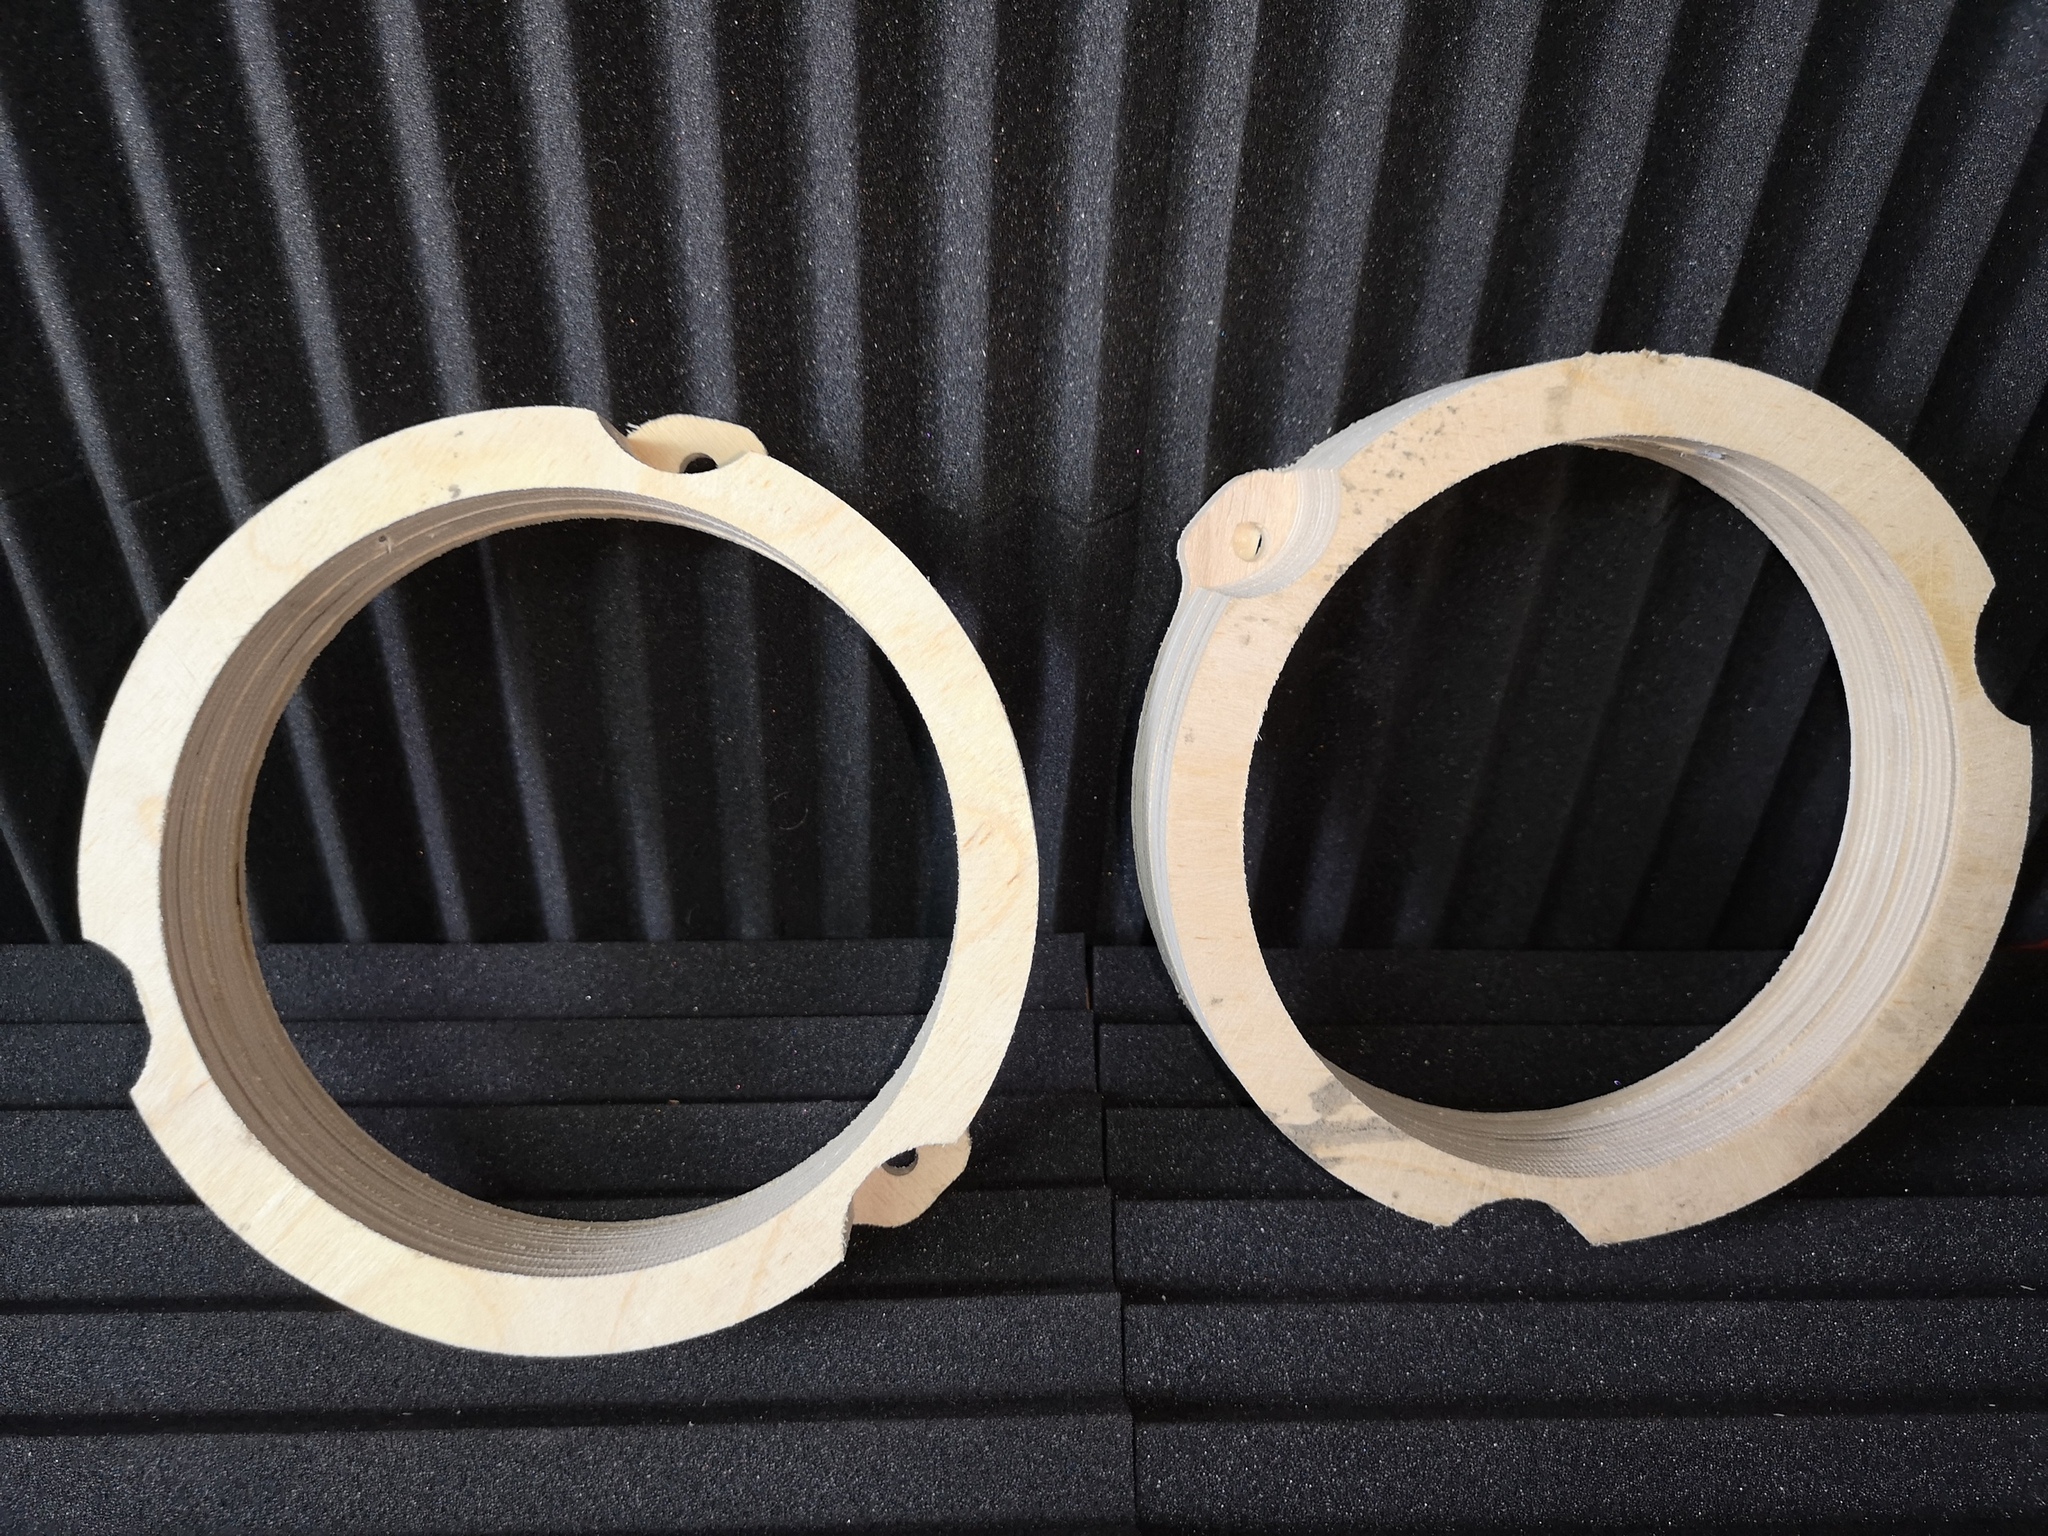  кольца 16 см наклон винил для установки акустики в двери - фото